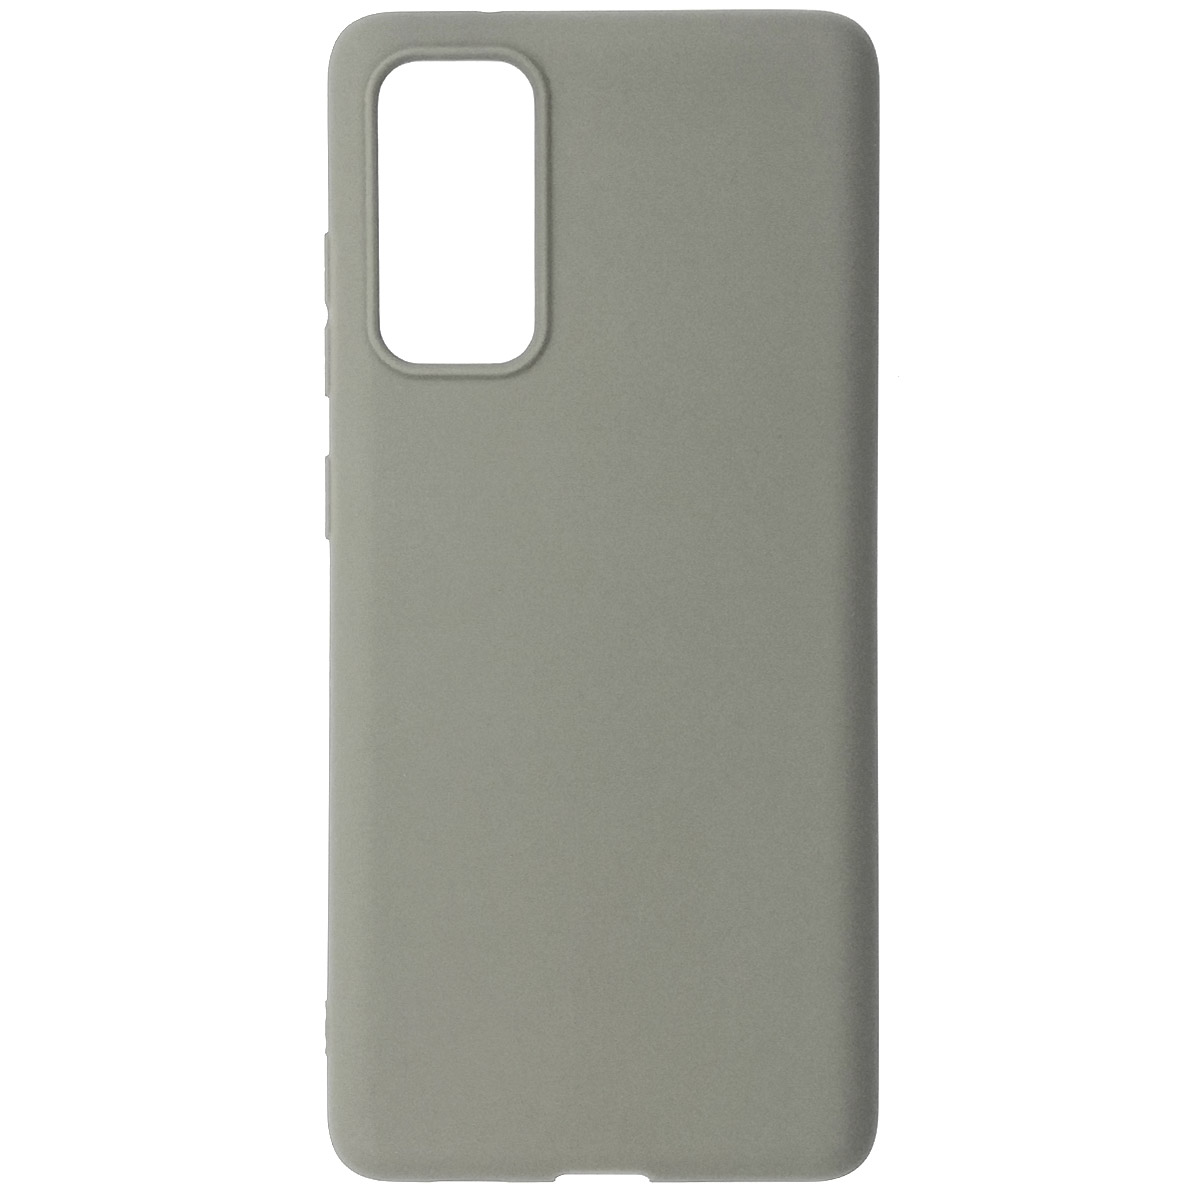 Чехол накладка GPS для SAMSUNG Galaxy S20FE (SM-G780), силикон, матовый, цвет светло серый